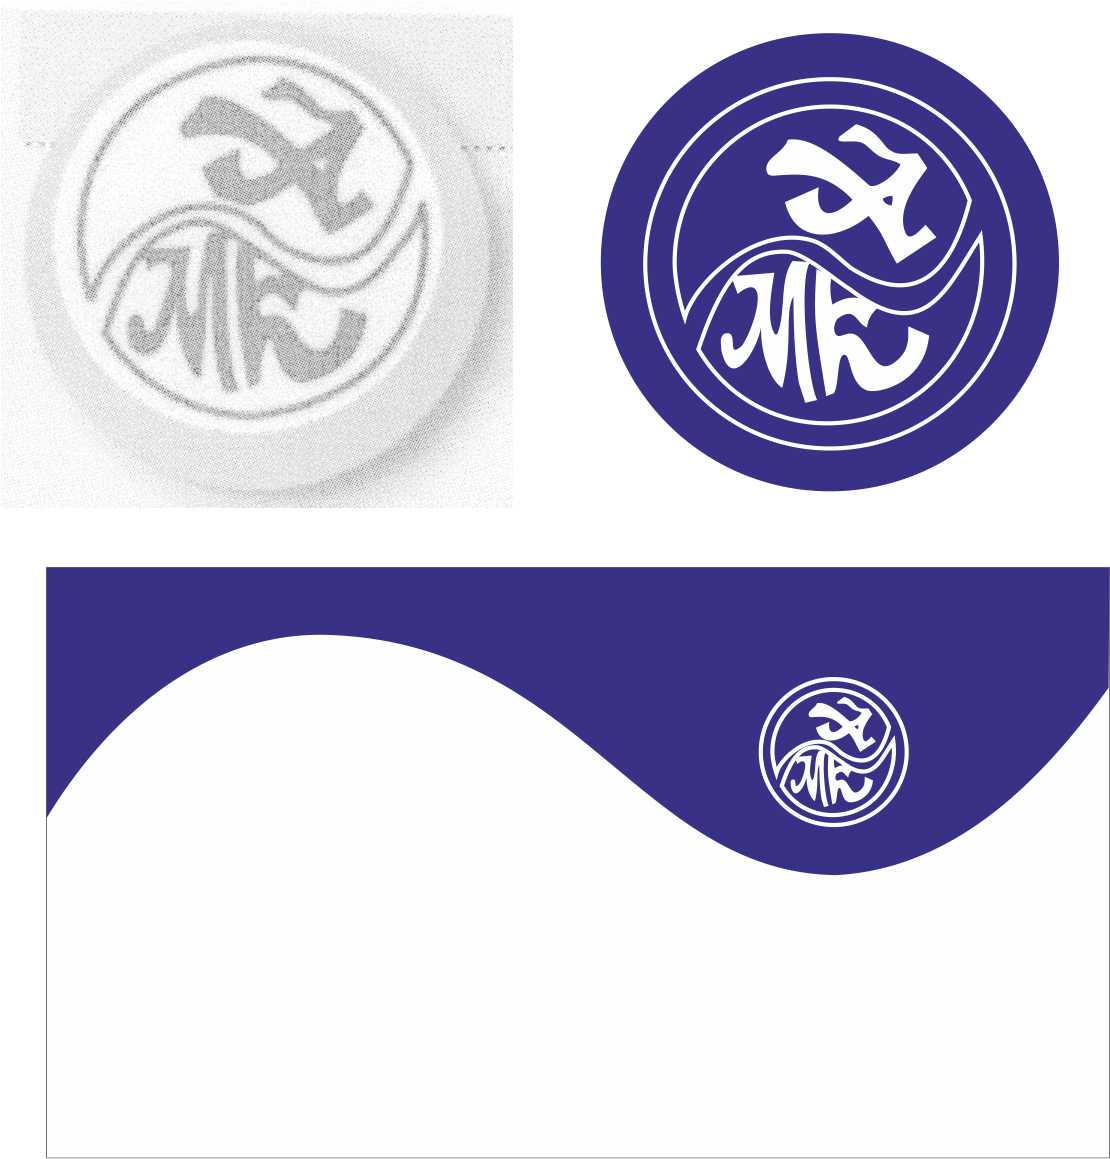 отрисовка логотипа АМК